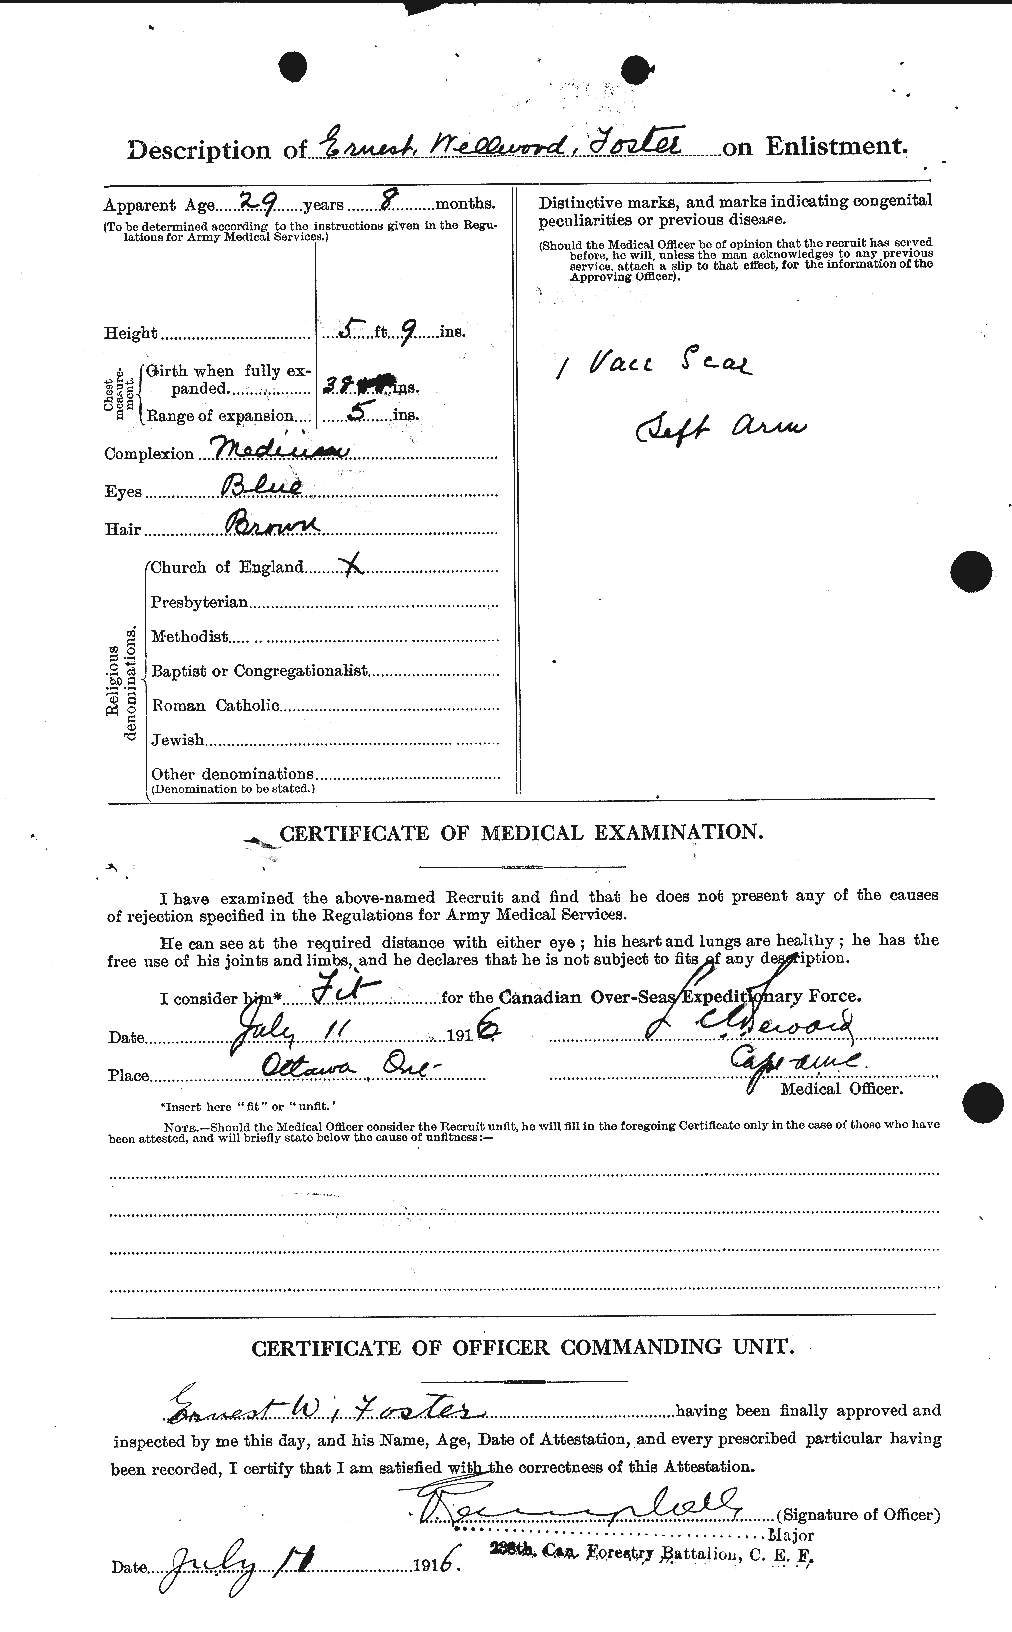 Dossiers du Personnel de la Première Guerre mondiale - CEC 330608b